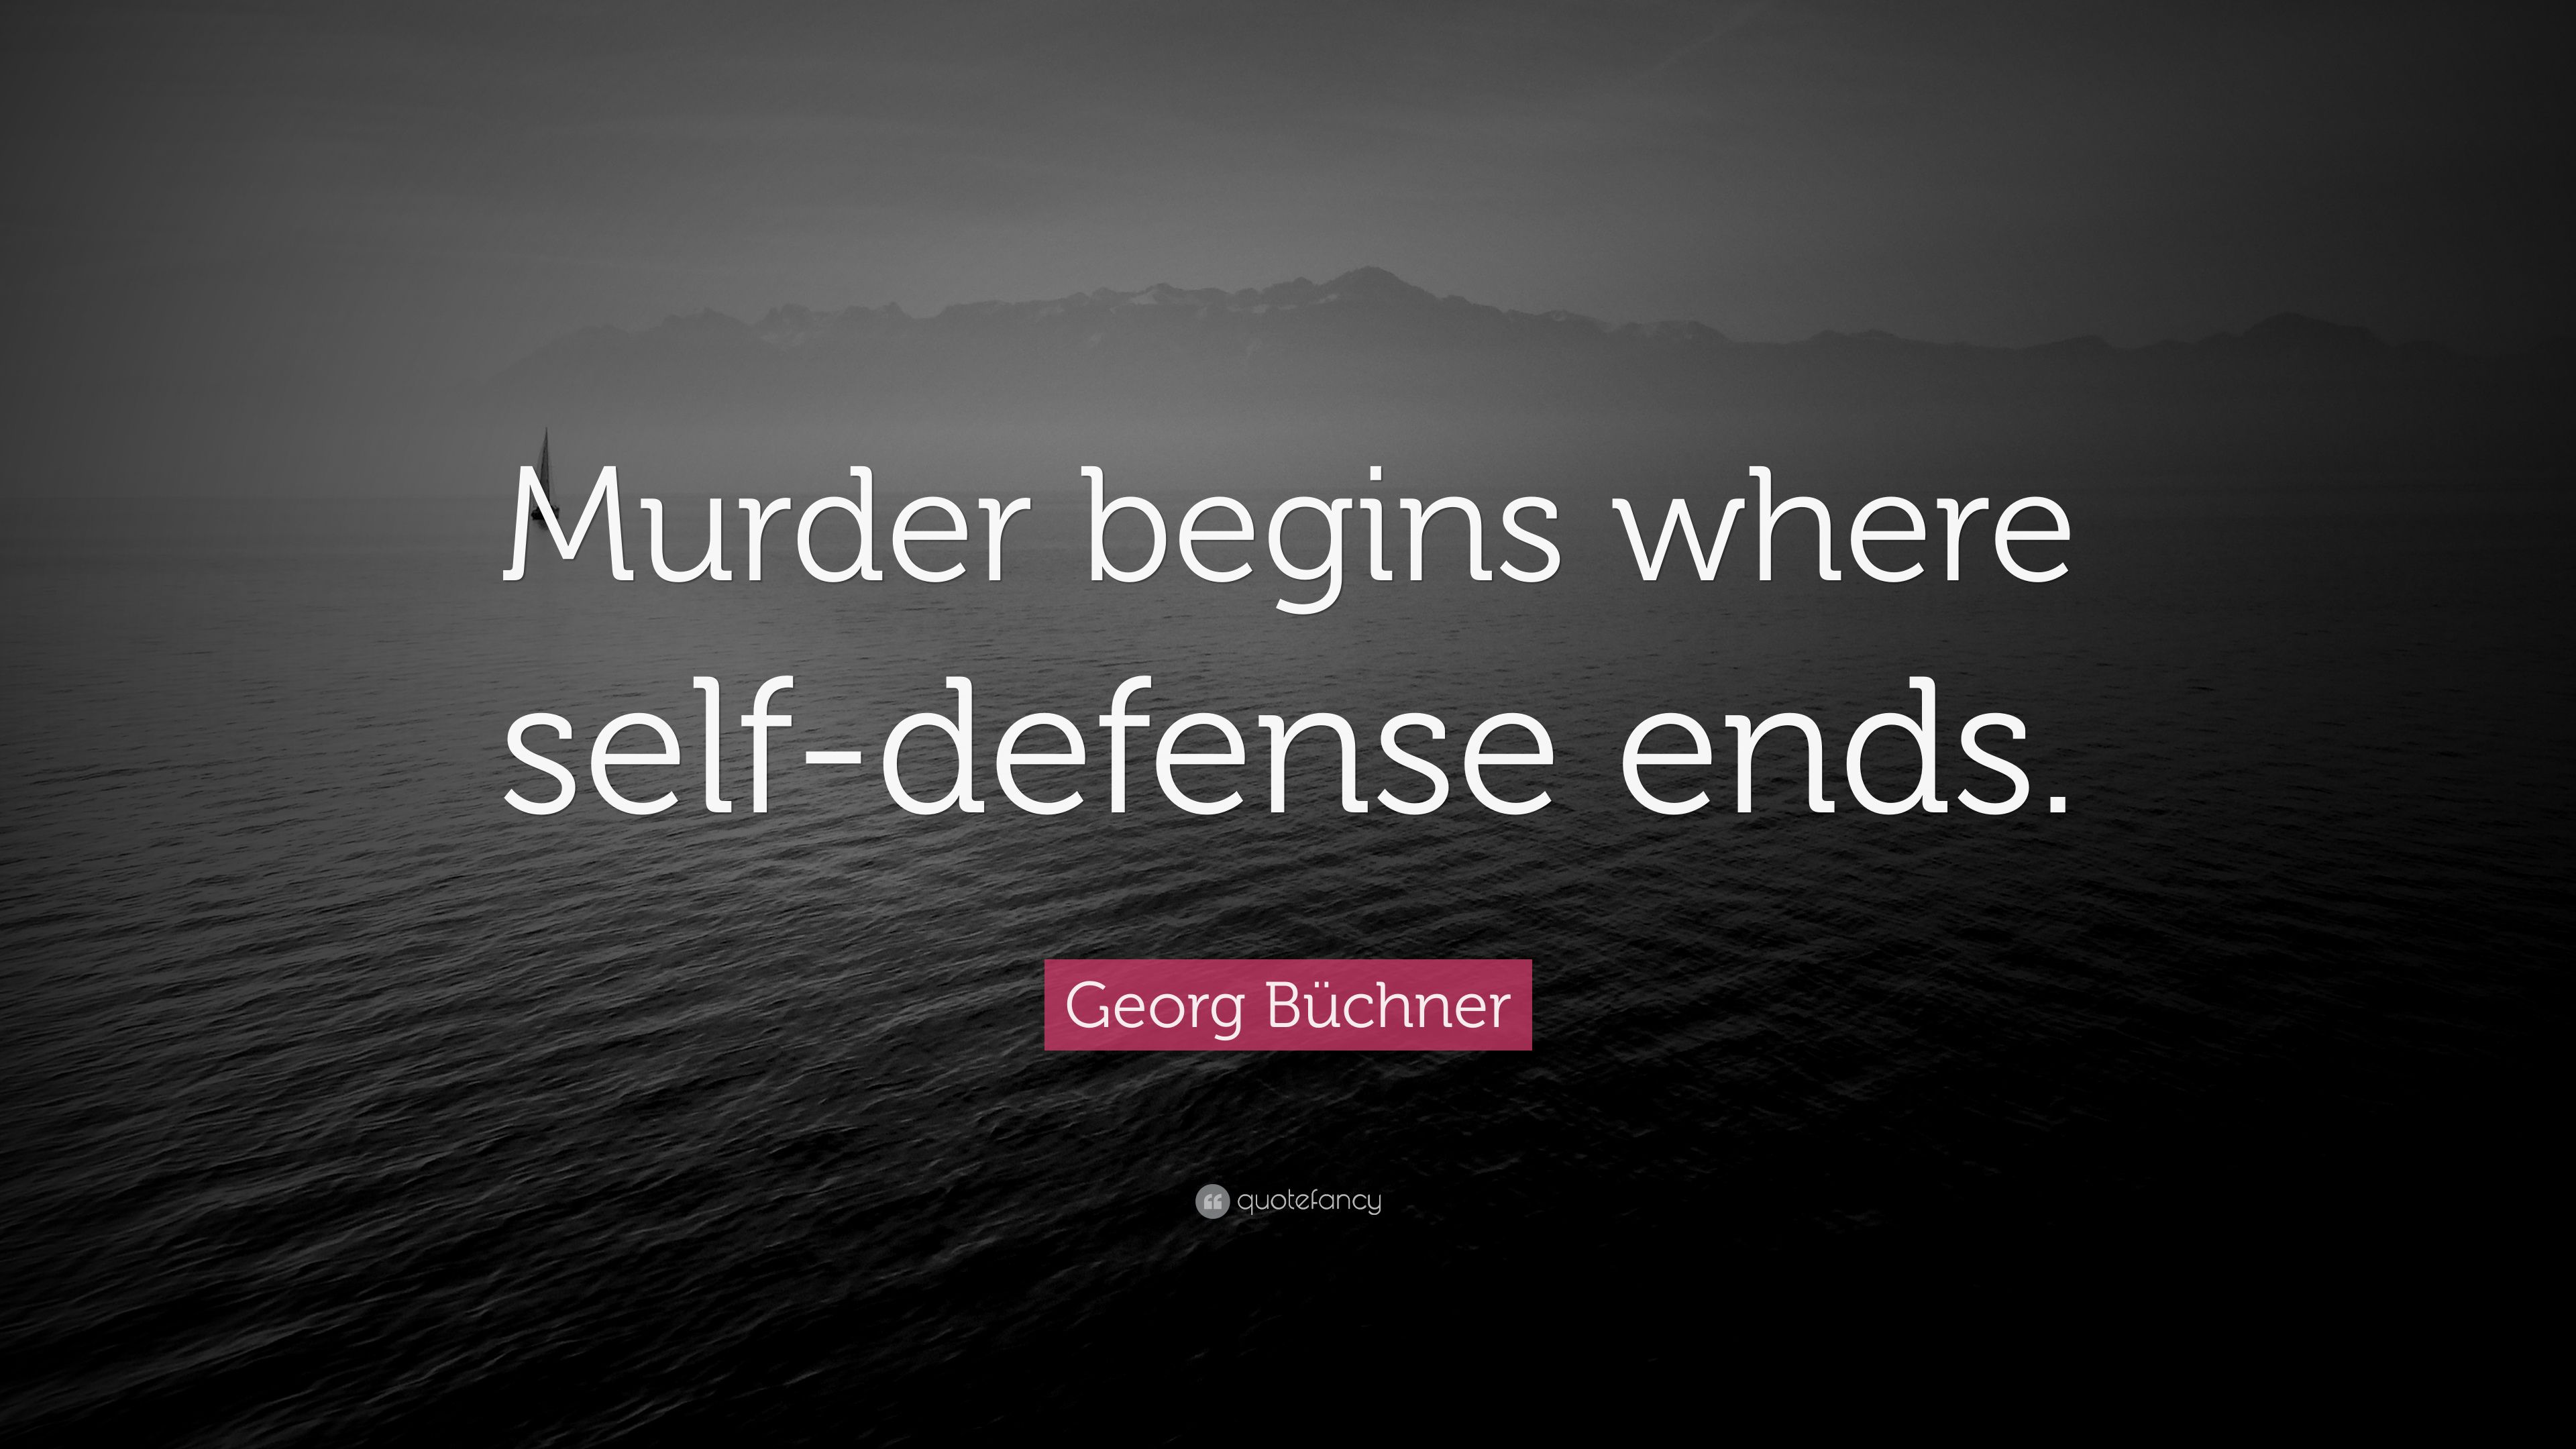 Georg Büchner Quote: “Murder Begins Where Self Defense Ends.” (7 Wallpaper)